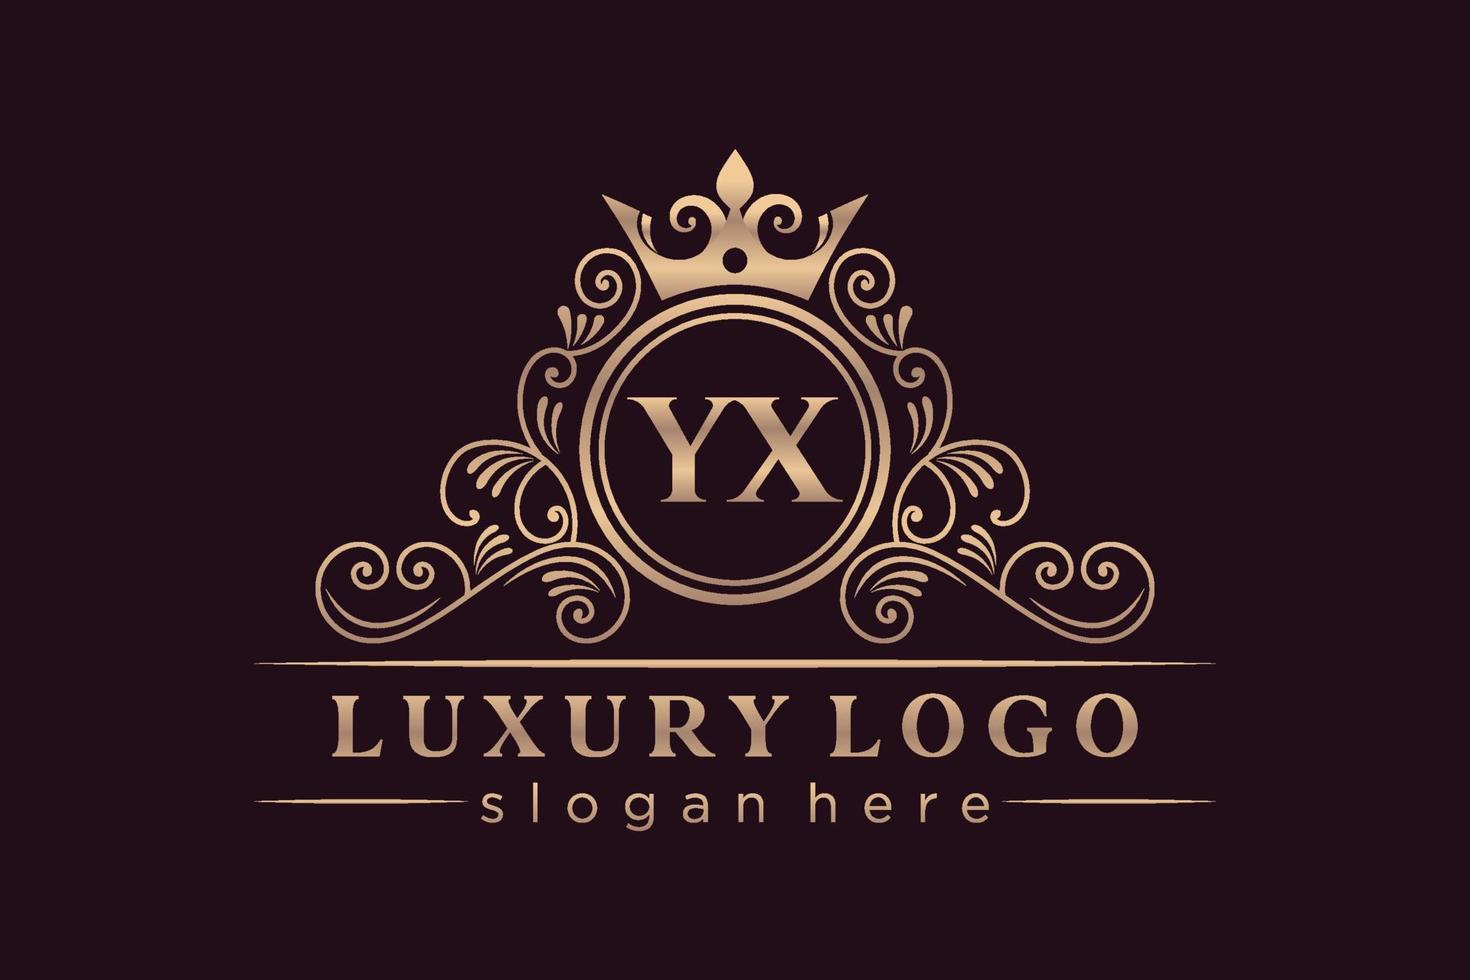 yx letra inicial oro caligráfico femenino floral dibujado a mano monograma heráldico antiguo estilo vintage diseño de logotipo de lujo vector premium